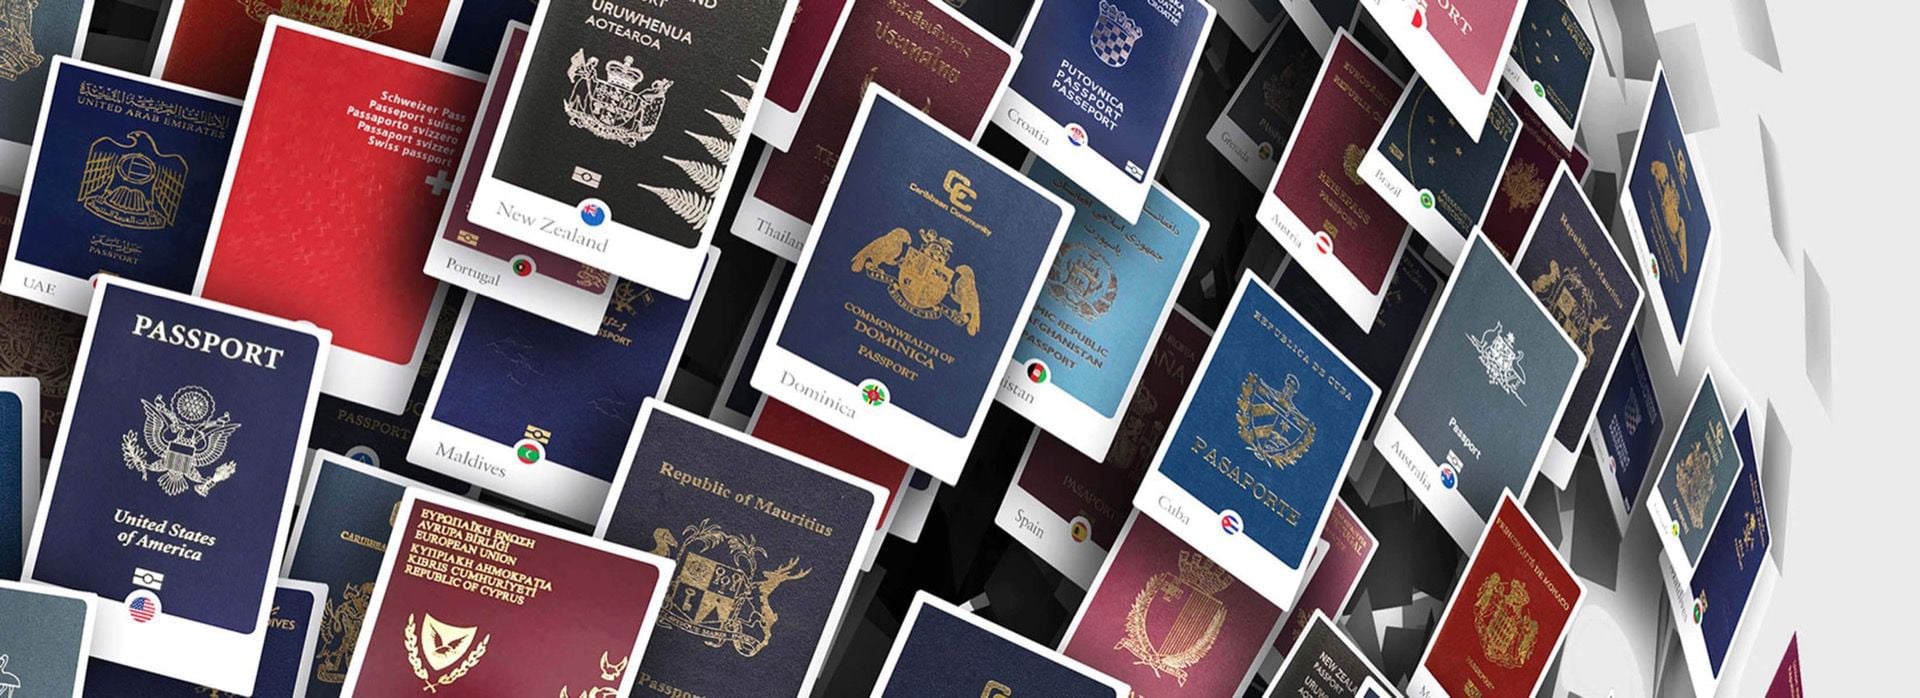 Passport Index Henley & Partners